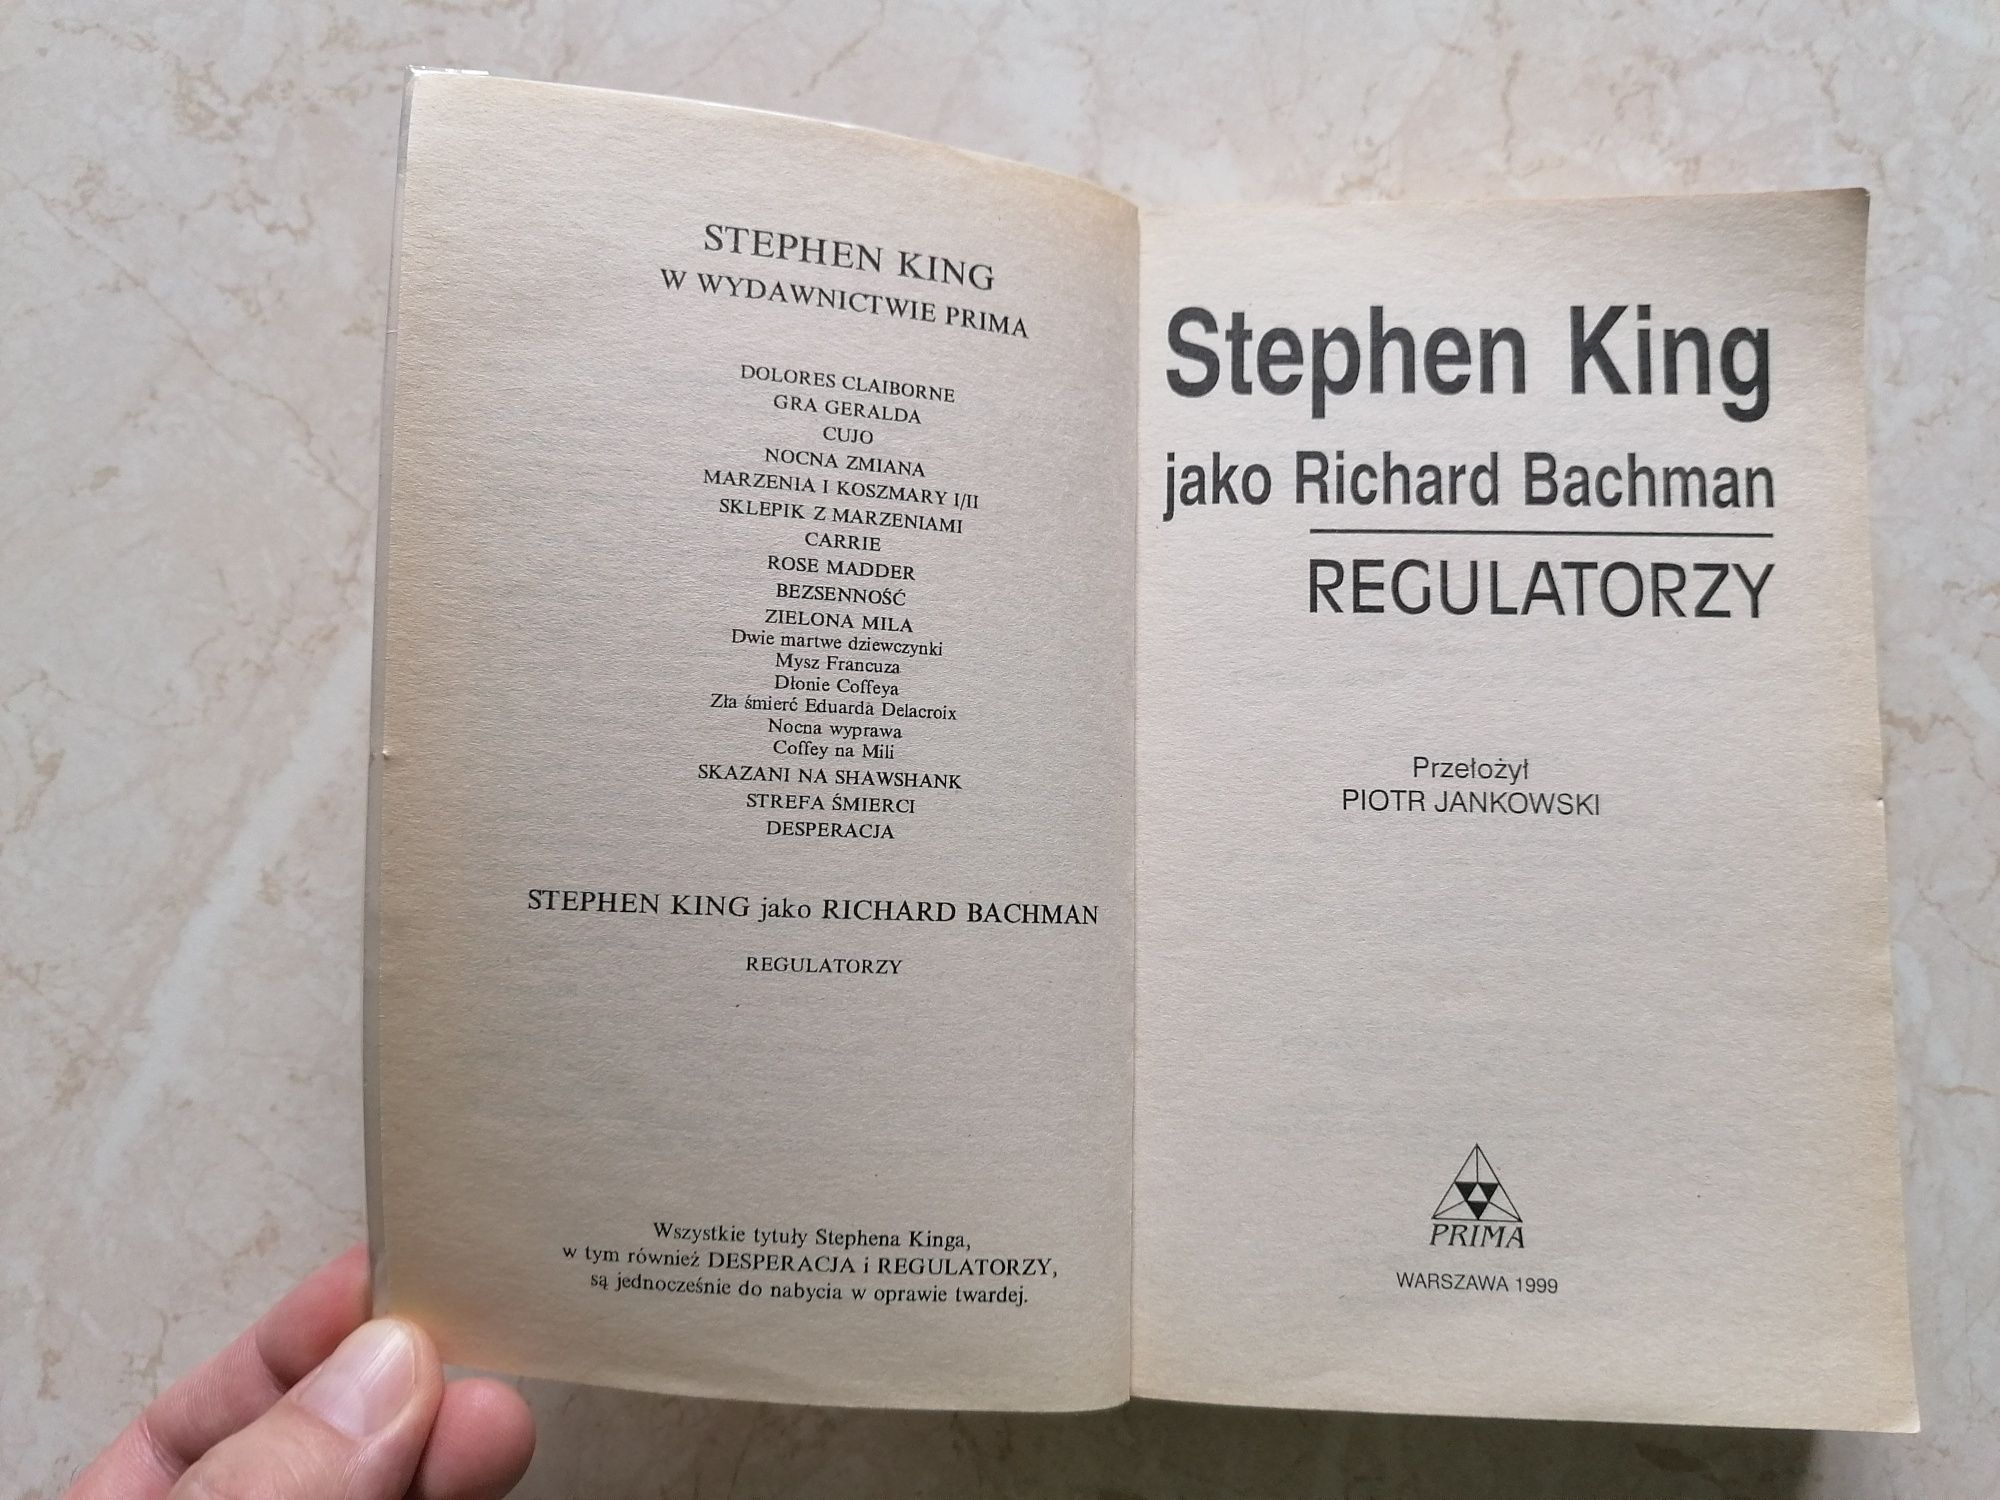 REGULATORZY, BDB! Wydanie 2 PRIMA, Stephen King jako Richard Bachman.